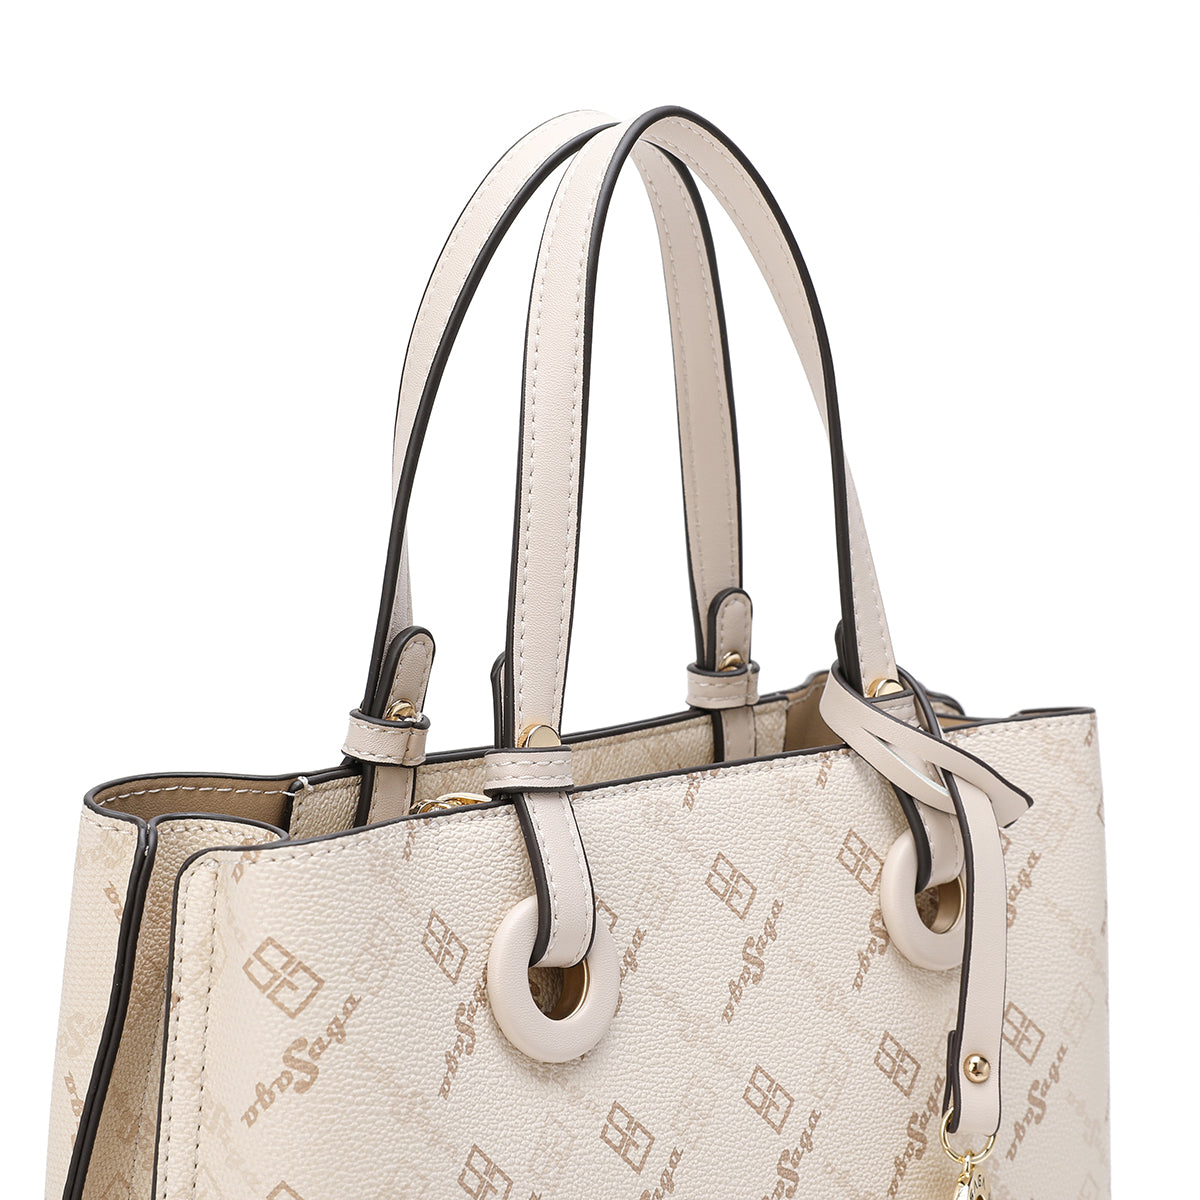 Handbag with shoulder strap, width 27 cm, cream color